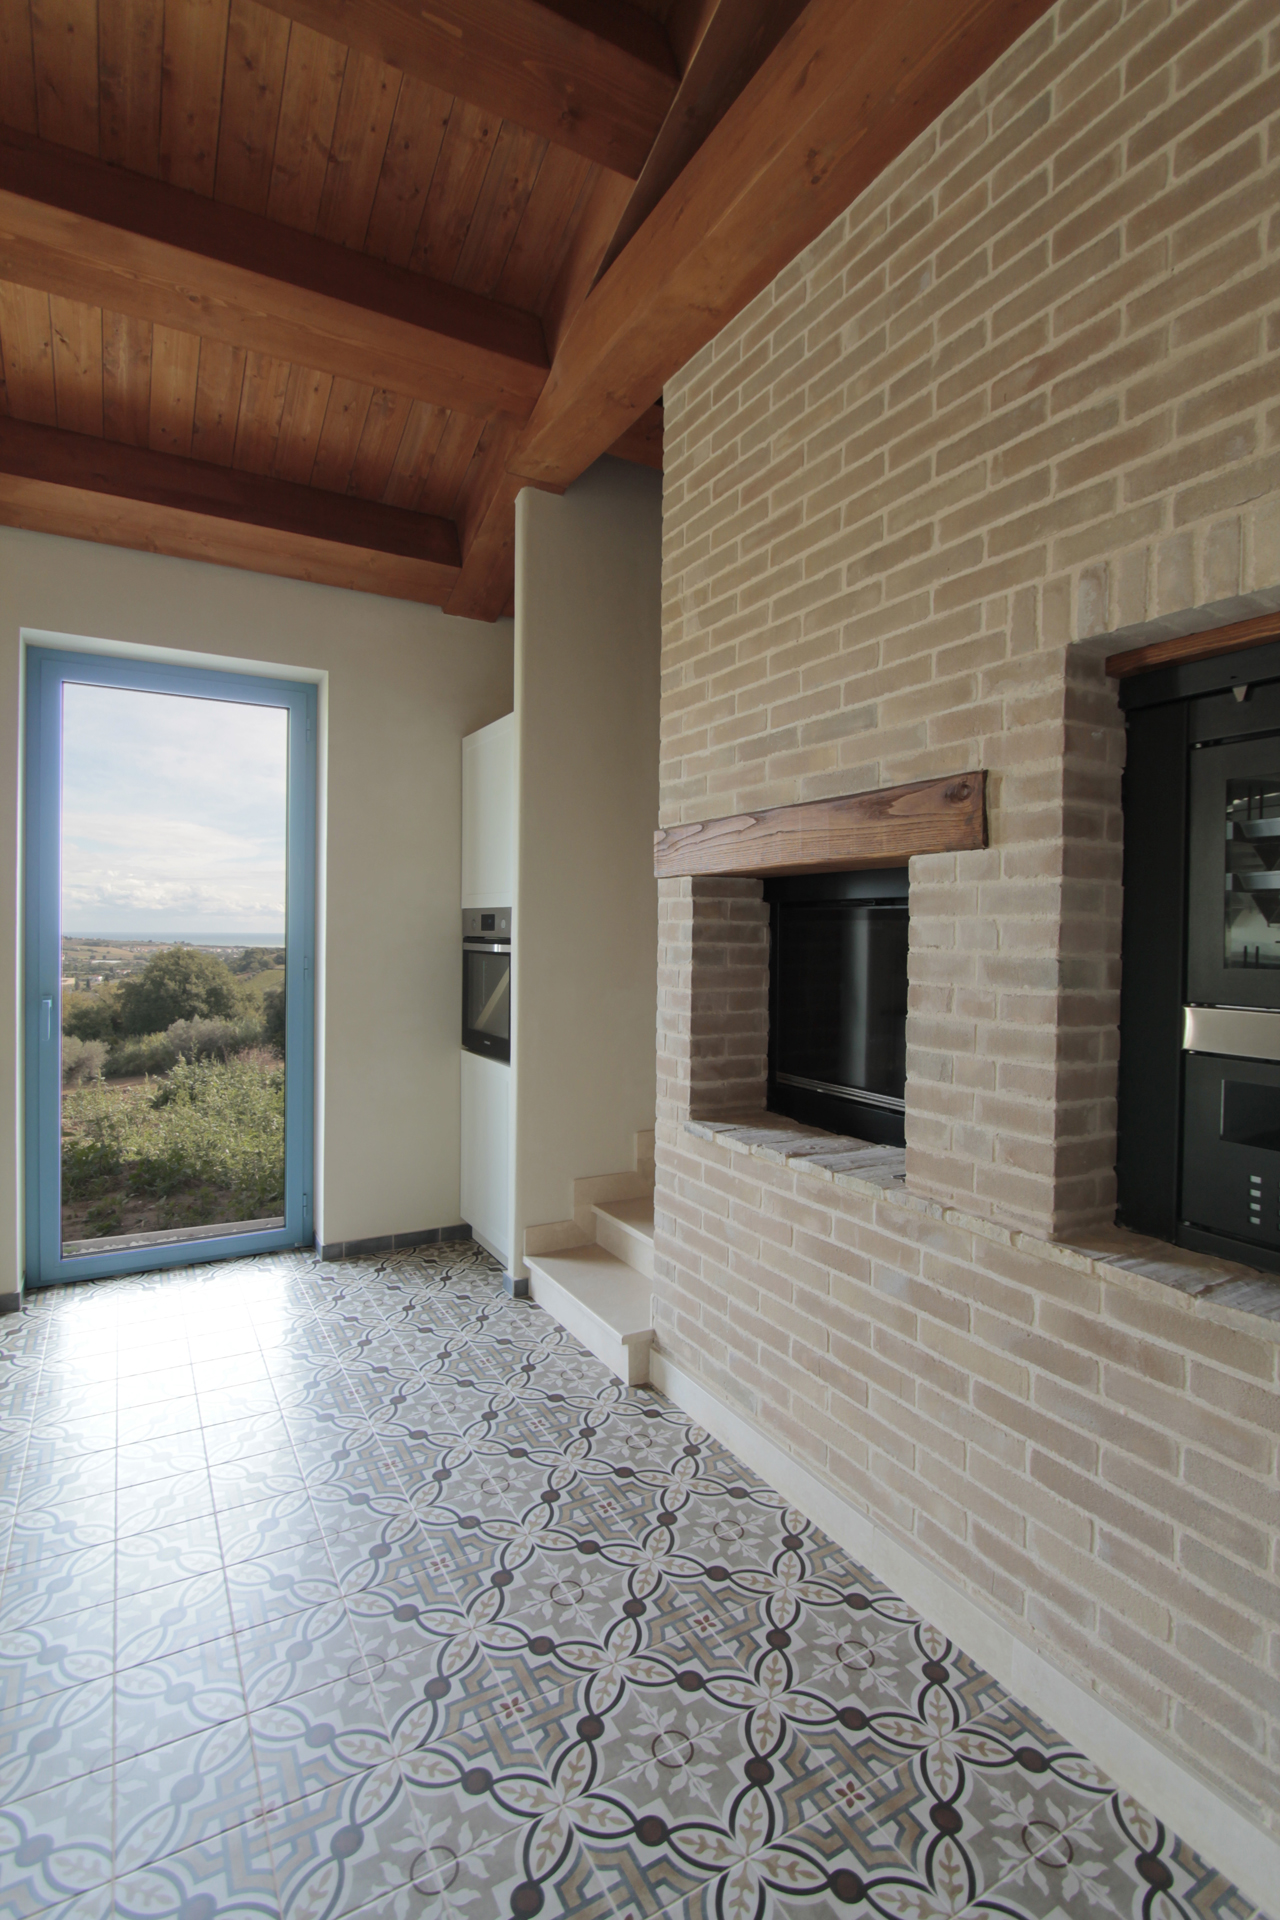 Casa di campagna - interno - cucina con tetto in legno e camino - cucina Scavolini - pavimento in gres effetto cementine